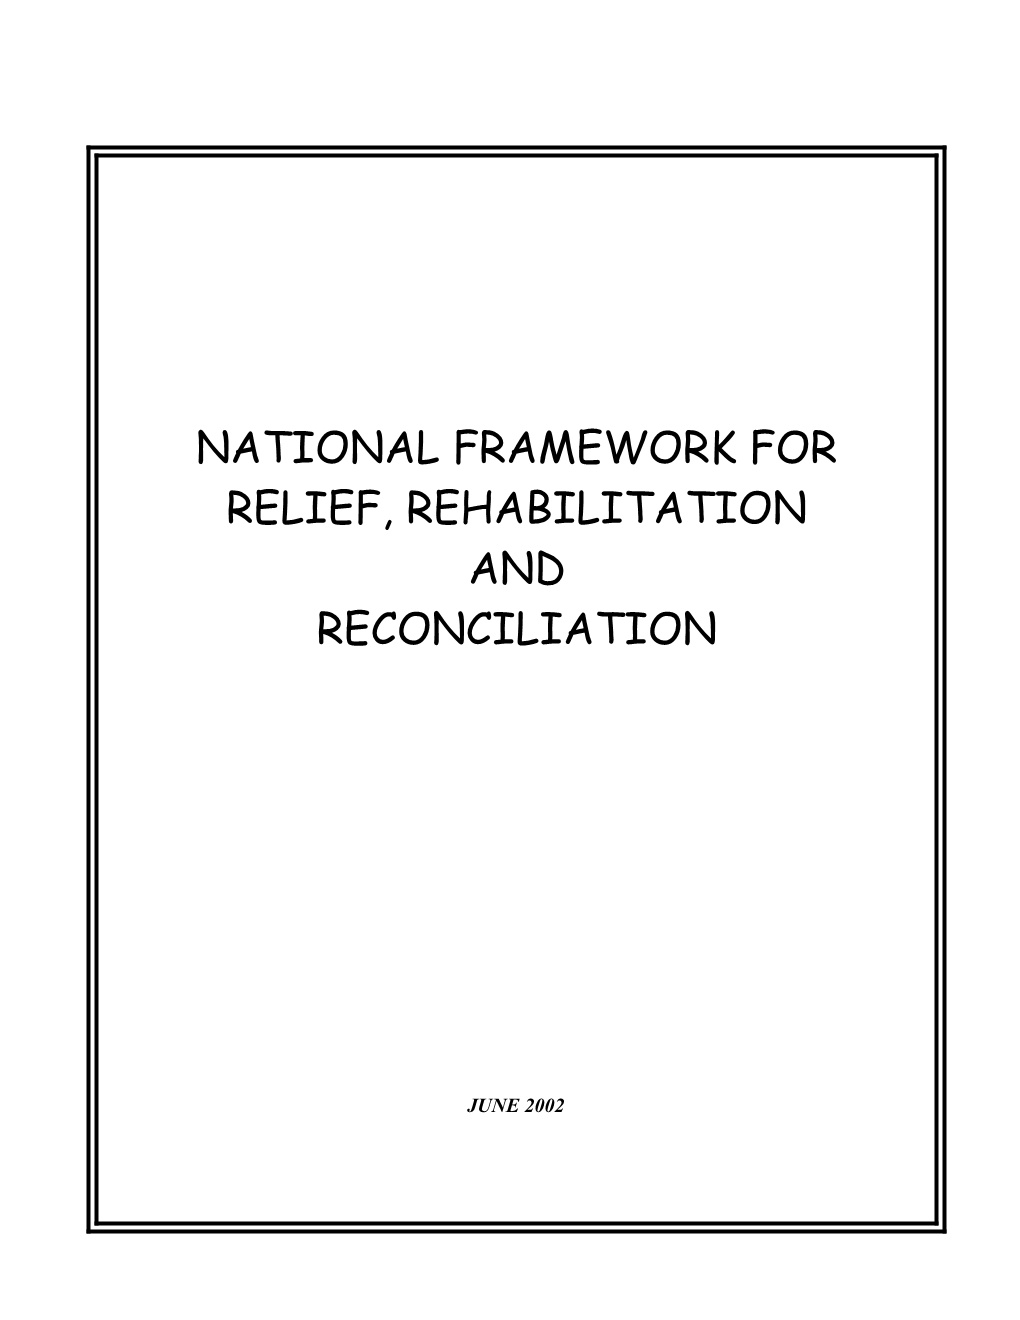 Framework for Relief, Rehabilitation